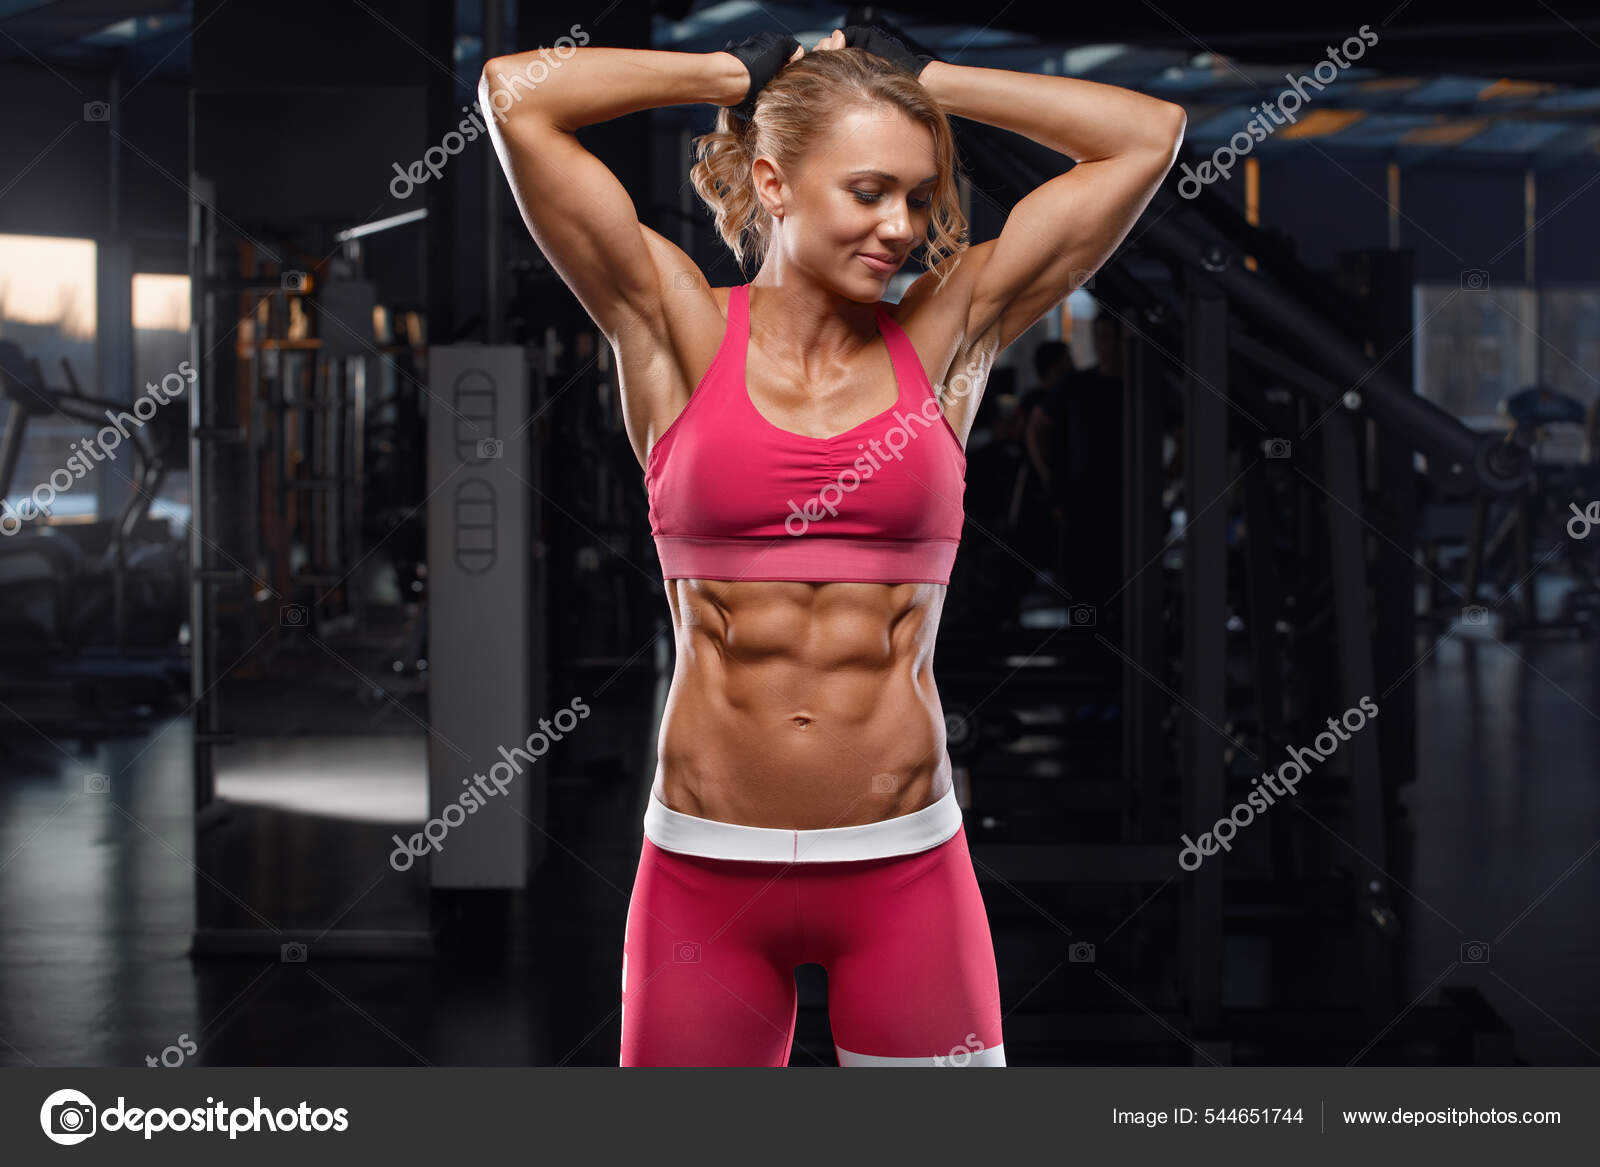 Fitness Vrouw Met Abs Platte Buik Gespierde Meid Vormige Buik stockfoto,  rechtenvrije foto door © Nikolas_jkd #544651744